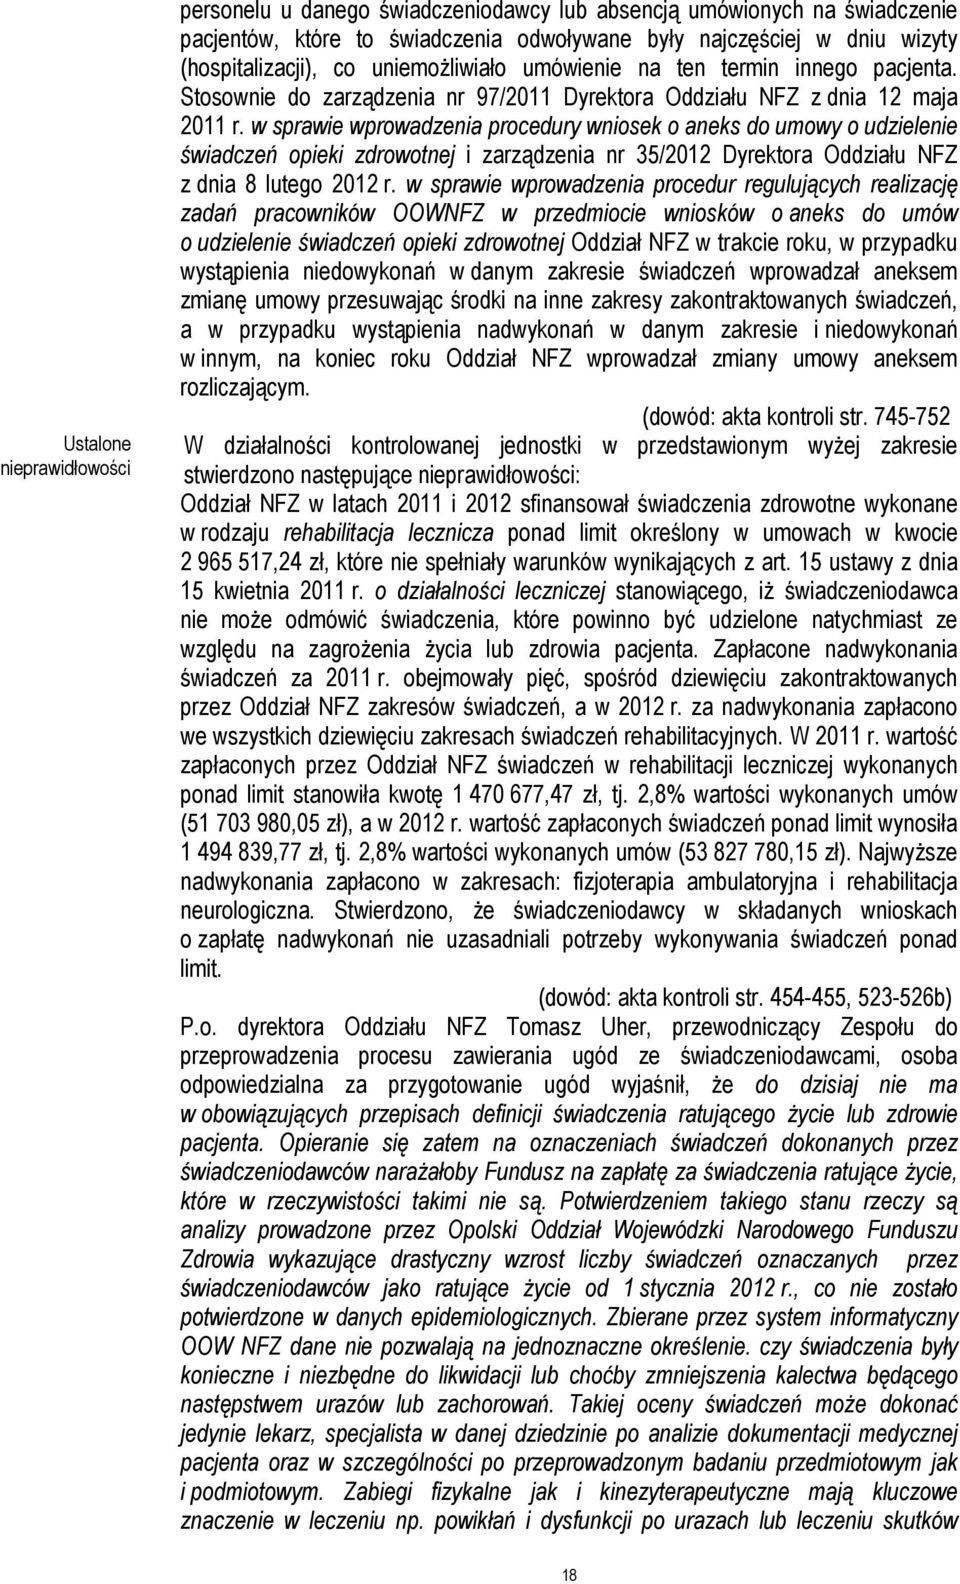 w sprawie wprowadzenia procedury wniosek o aneks do umowy o udzielenie świadczeń opieki zdrowotnej i zarządzenia nr 35/2012 Dyrektora Oddziału NFZ z dnia 8 lutego 2012 r.